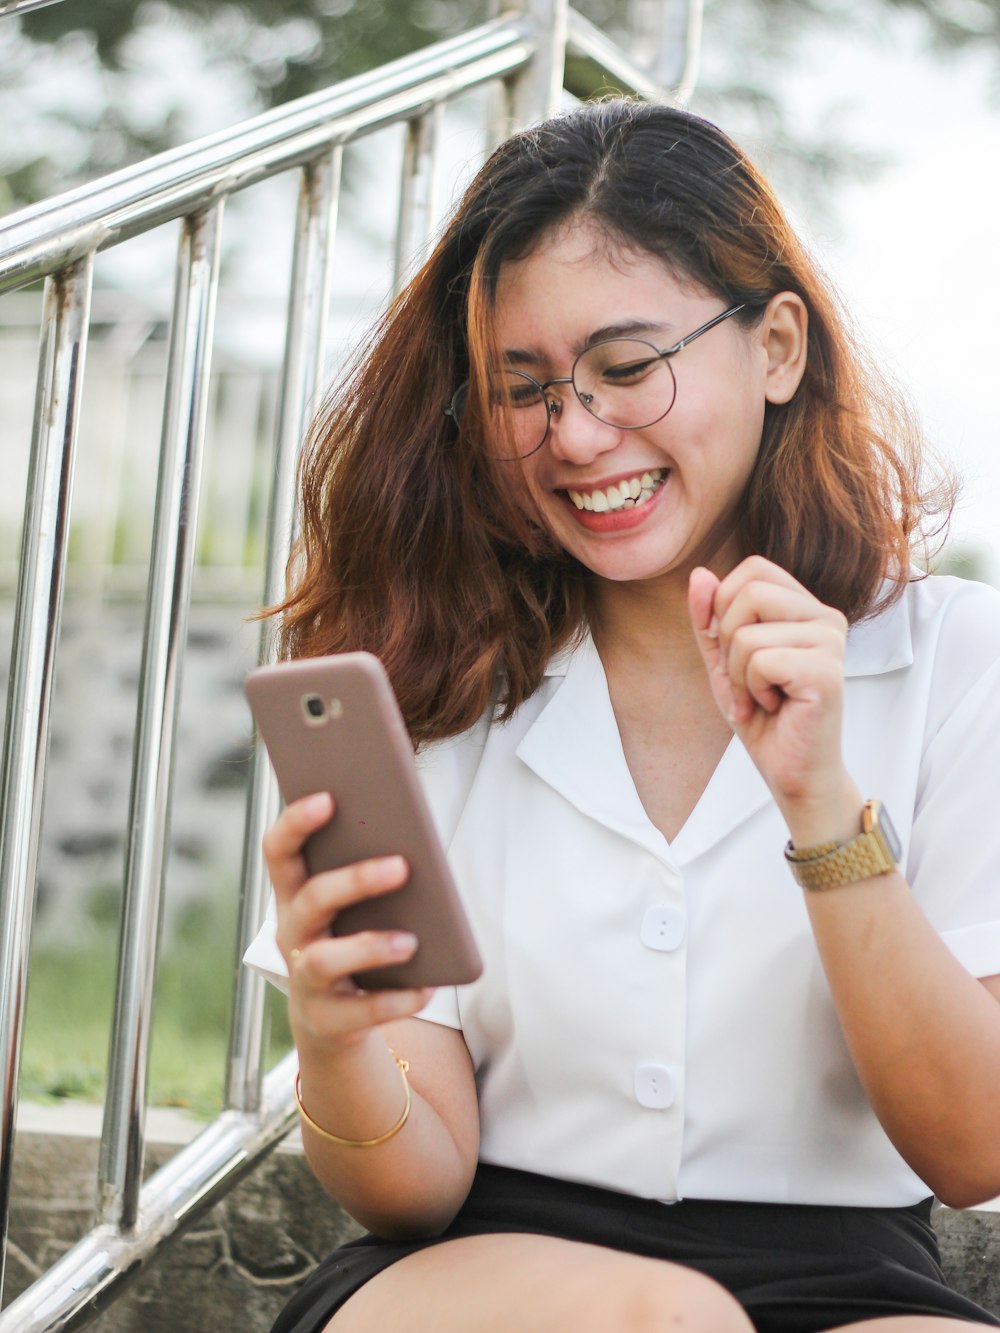 Femme en chemise blanche boutonnée tenant un iPhone 6 argenté